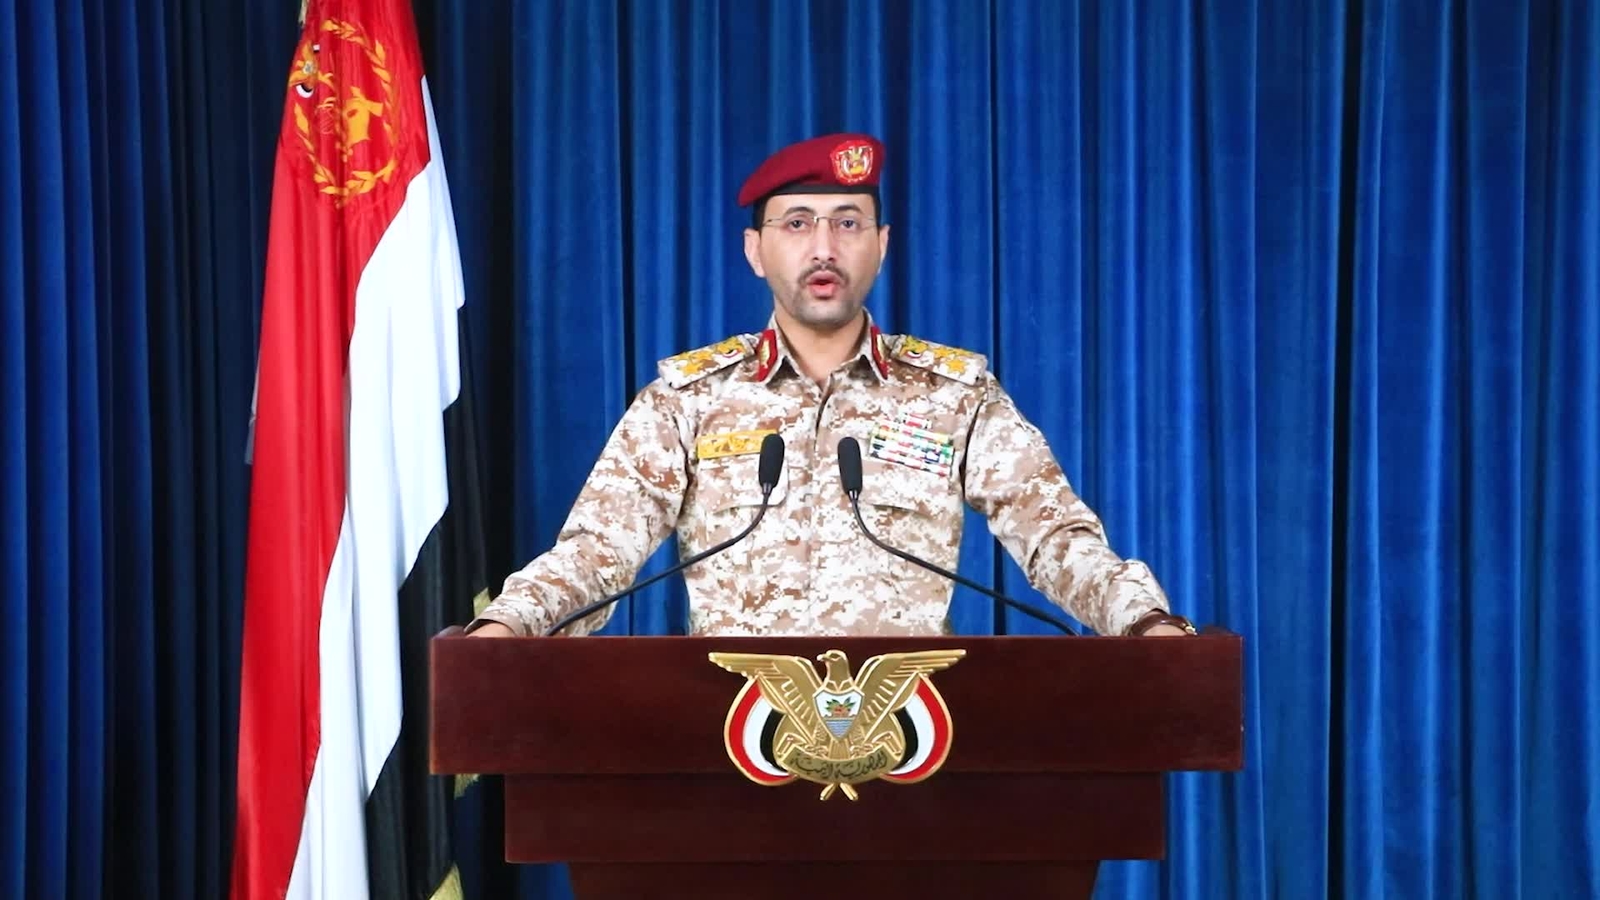  عاجل | بيان صادر عن القوات المسلحة اليمنية...يتبع